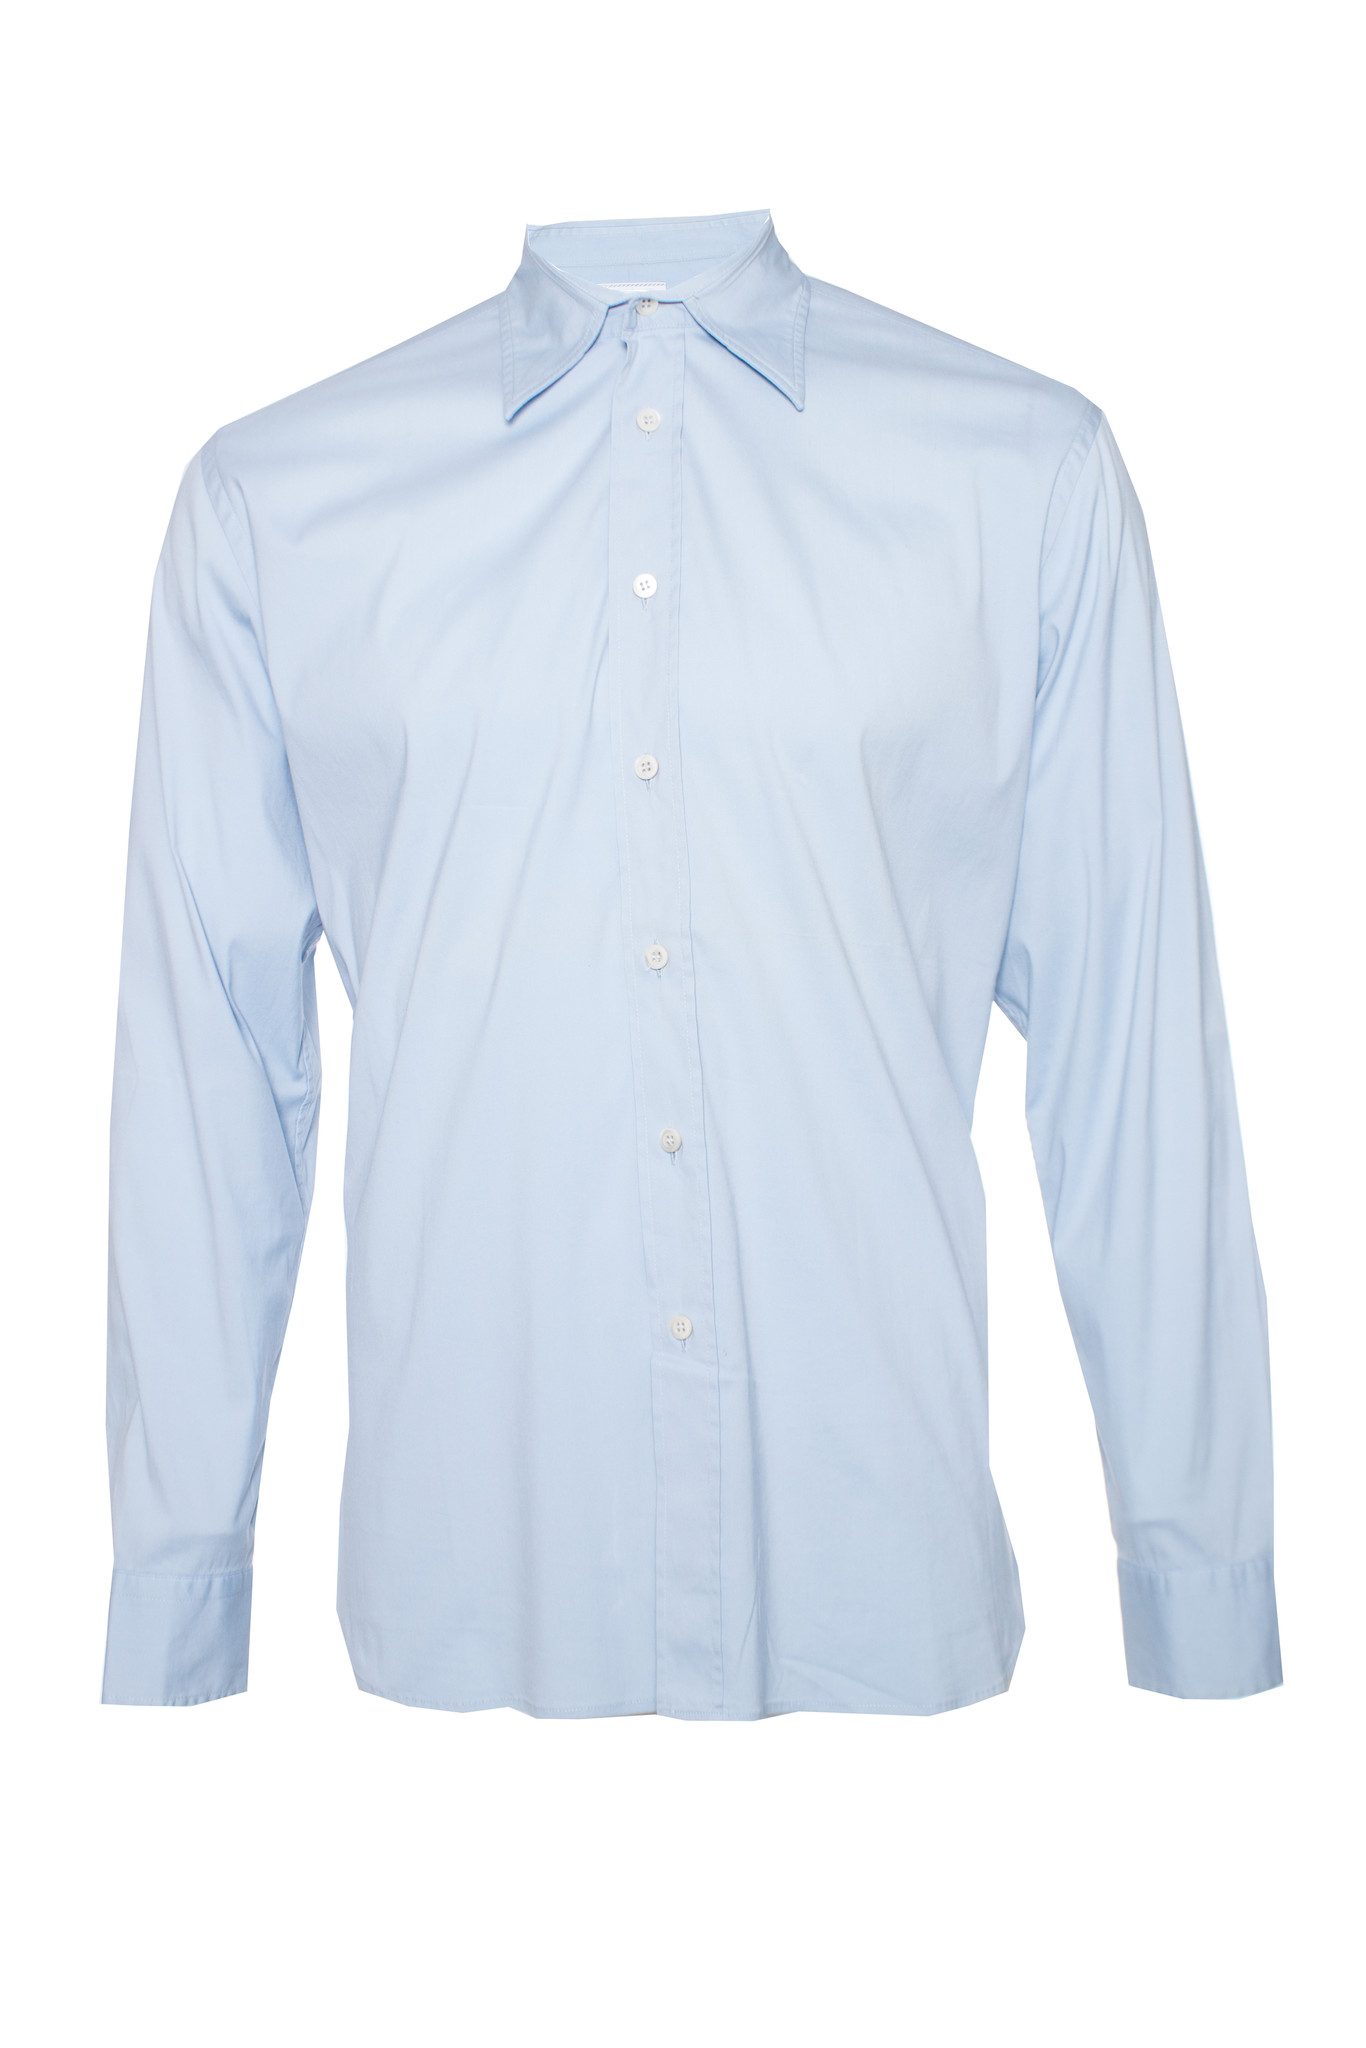 Prada, light blue shirt in size 40-15 3/4 (M). - Unique Designer Pieces